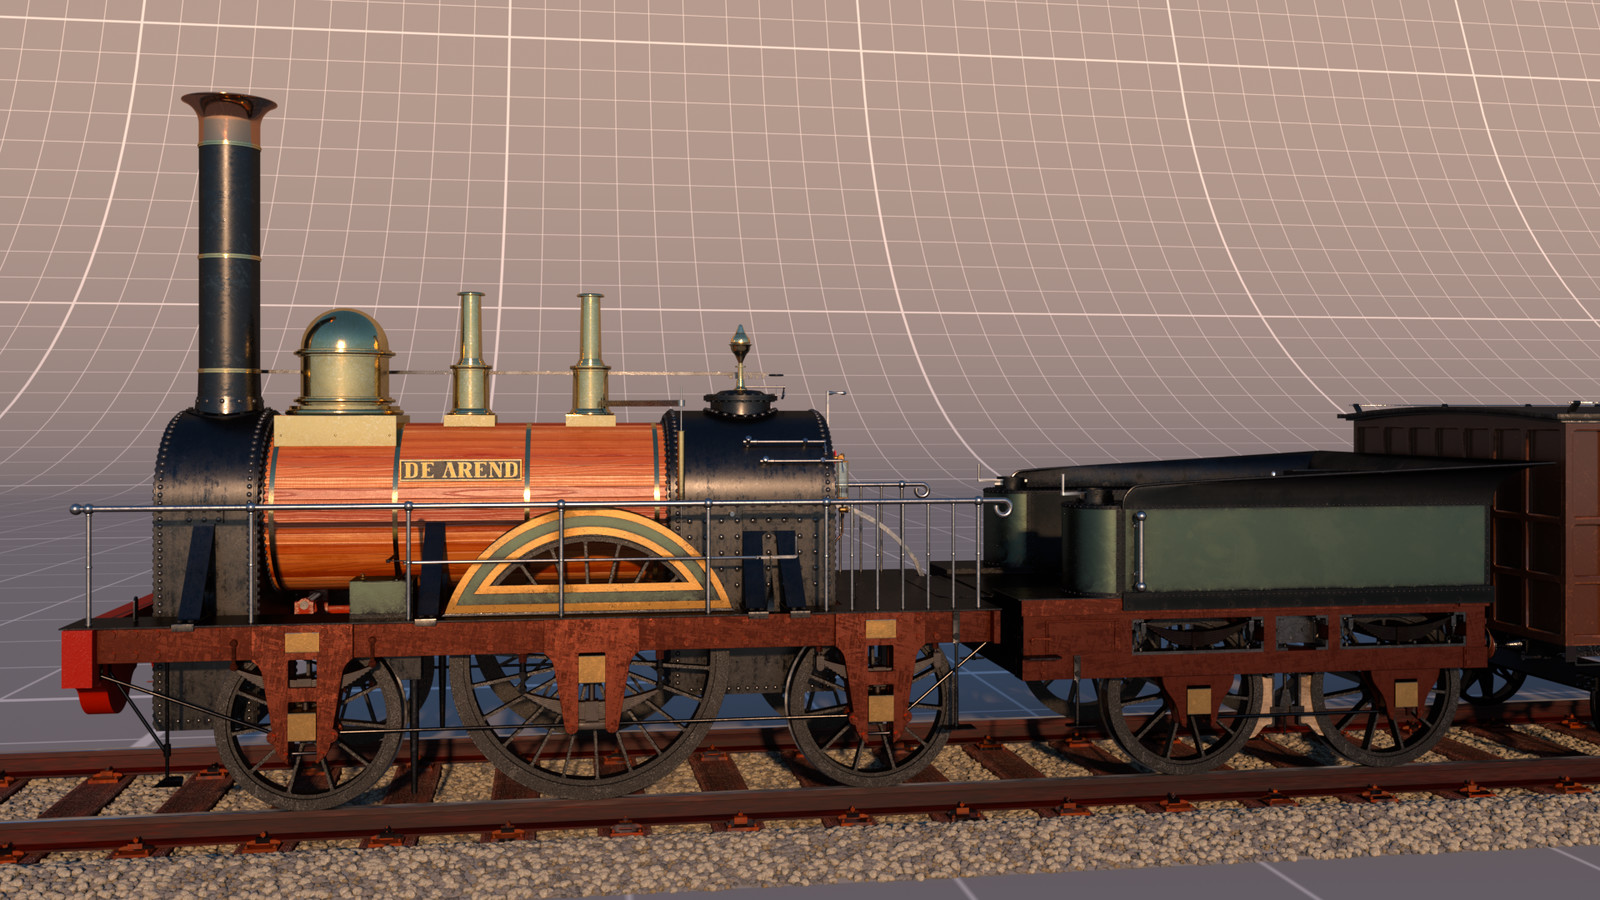 Full render of the train.